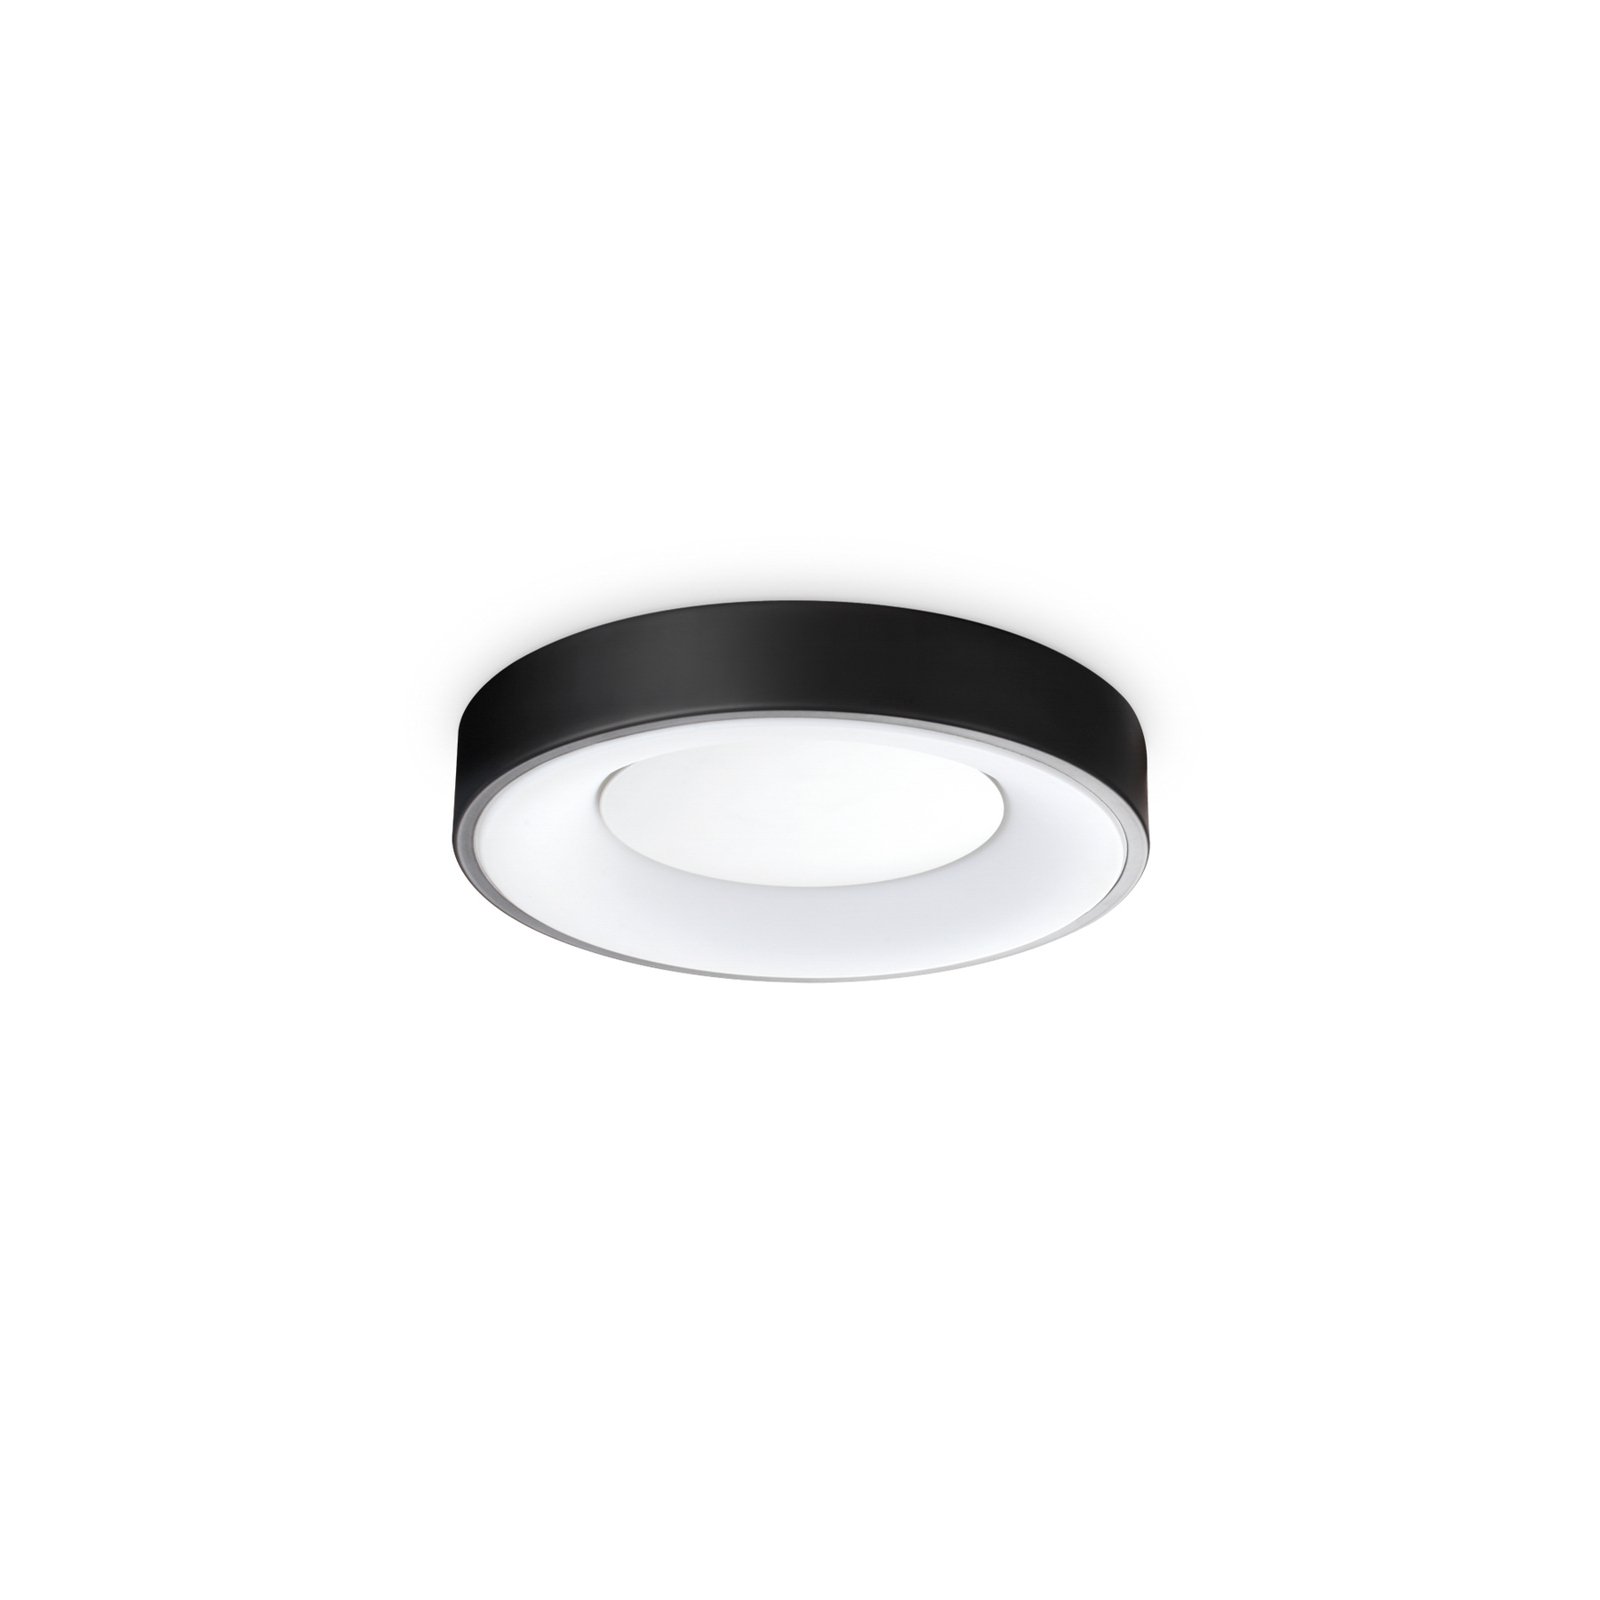 Ideal Lux LED-Deckenleuchte Planet, schwarz, Ø 30 cm, Metall